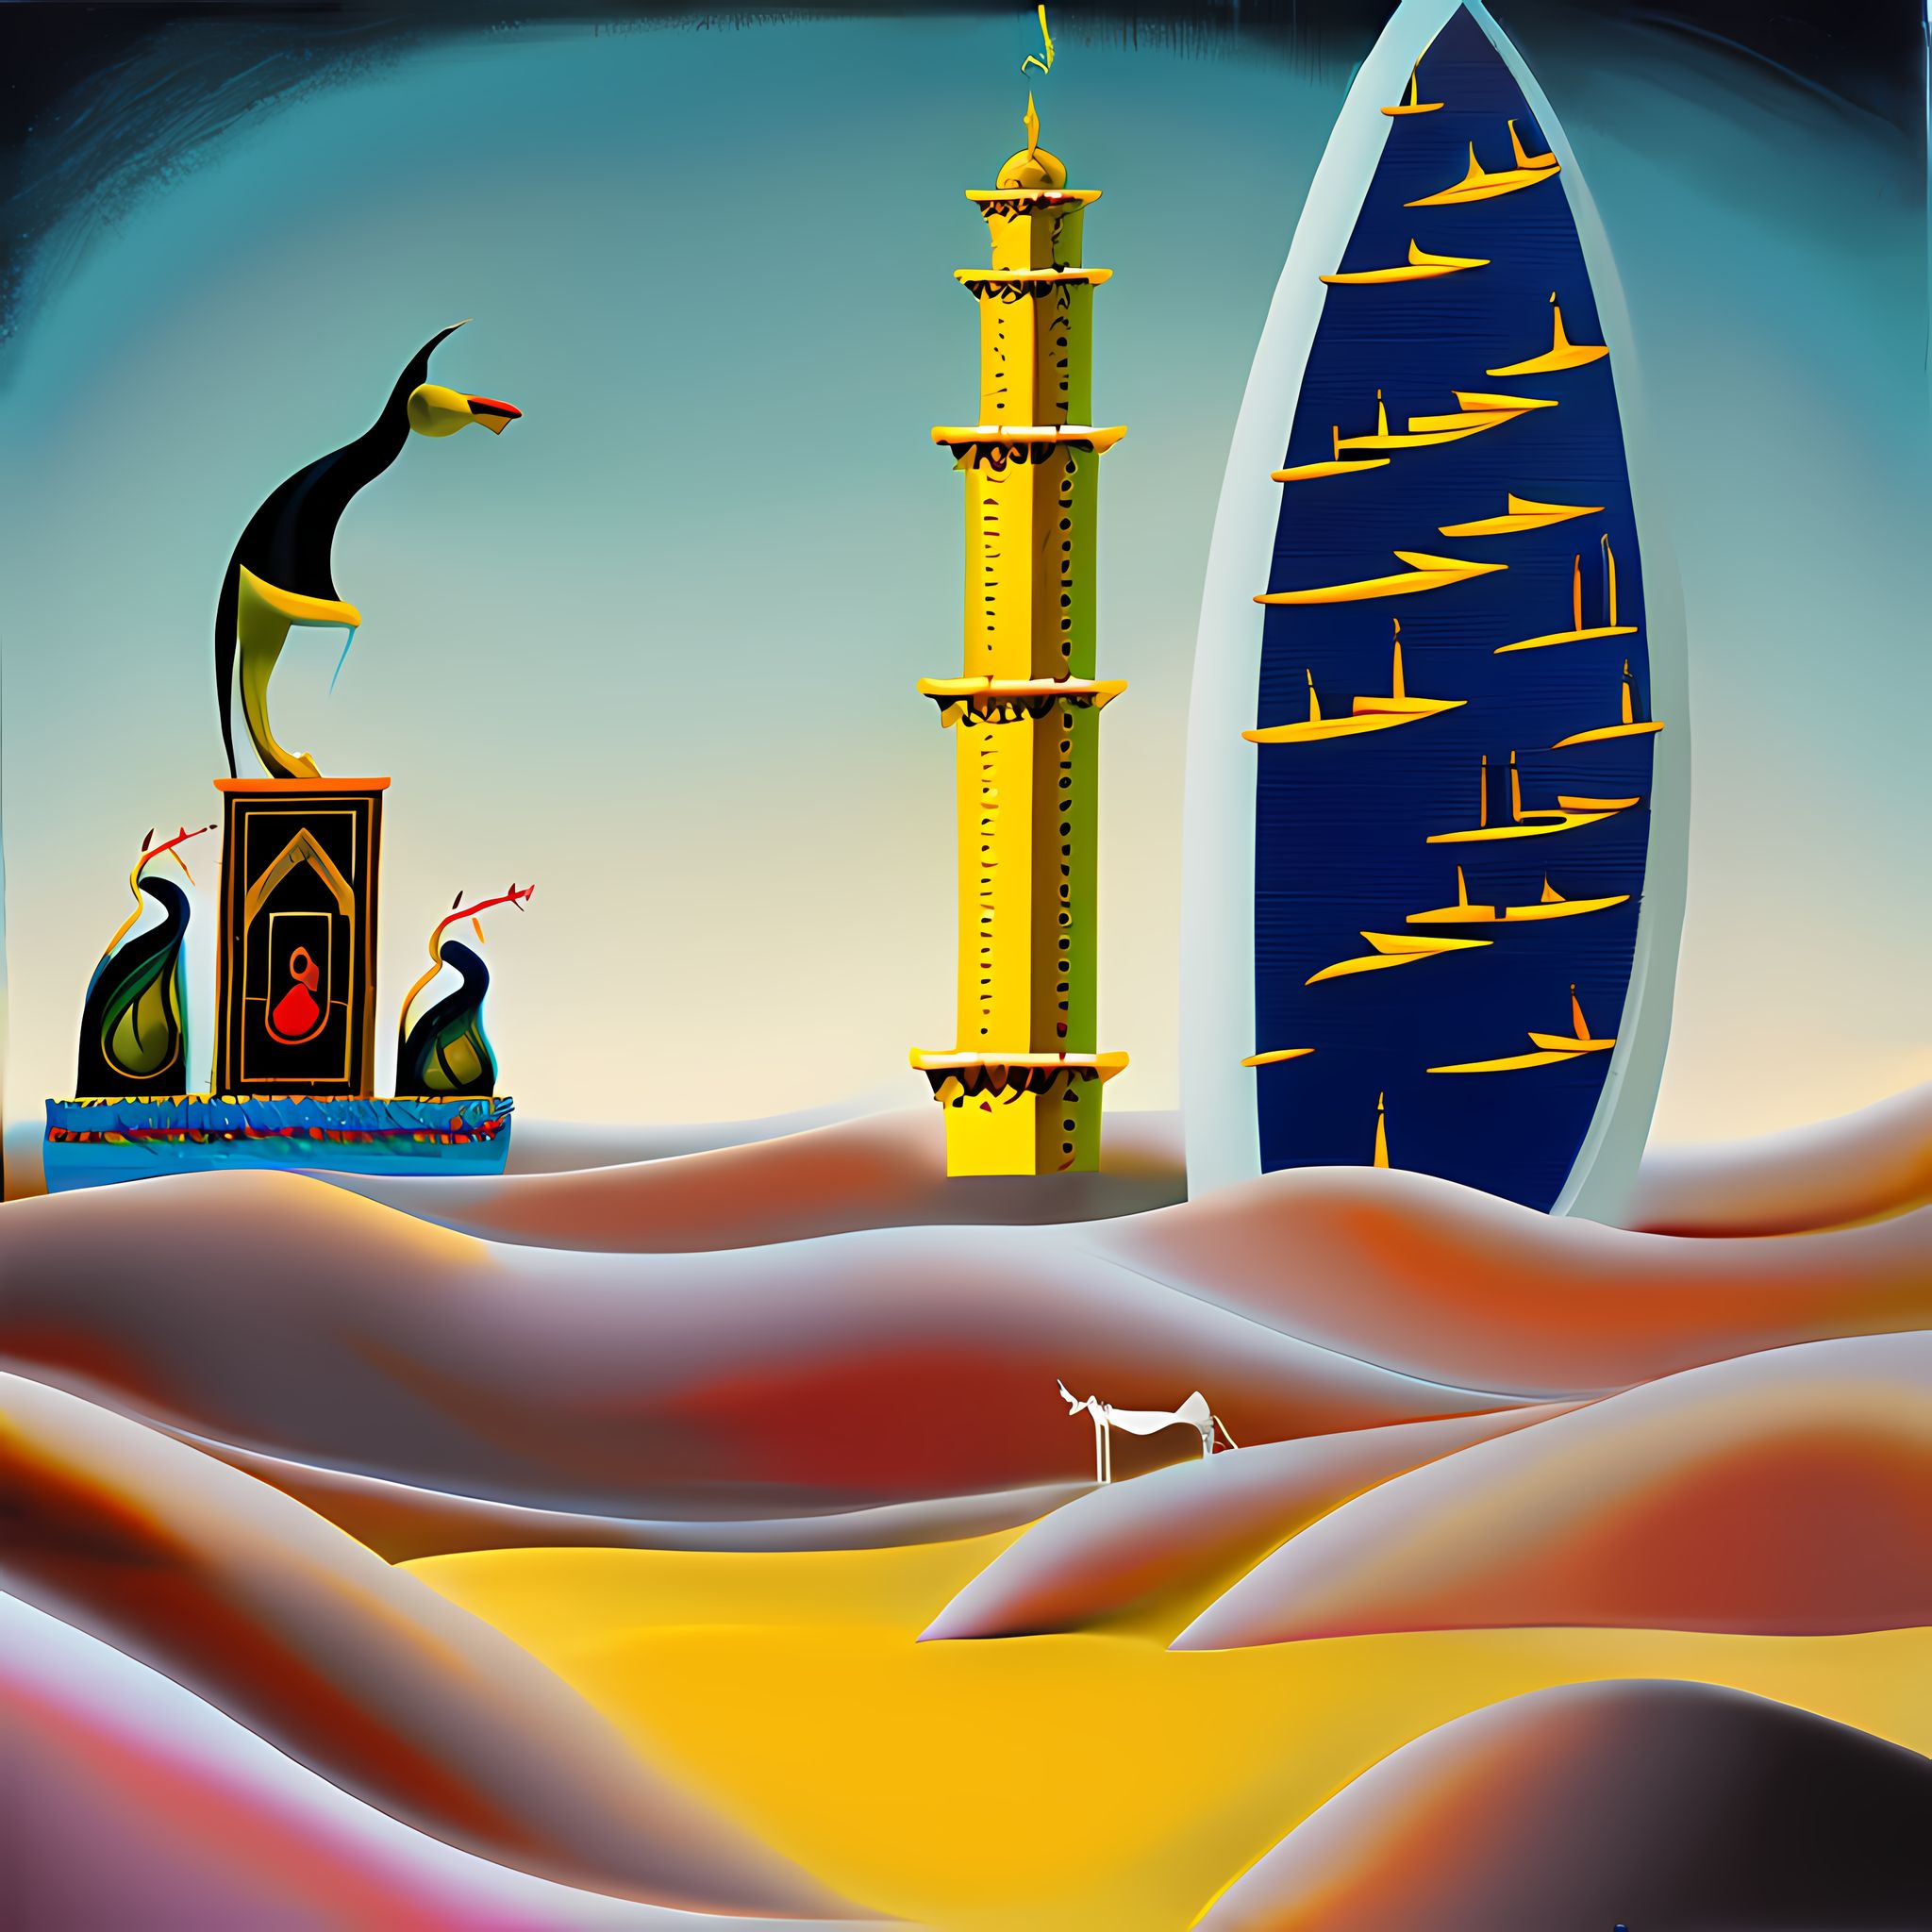 Melting-Dubai-UAE-Arabic-Historic-Dali-Painting-Surreal-p35i